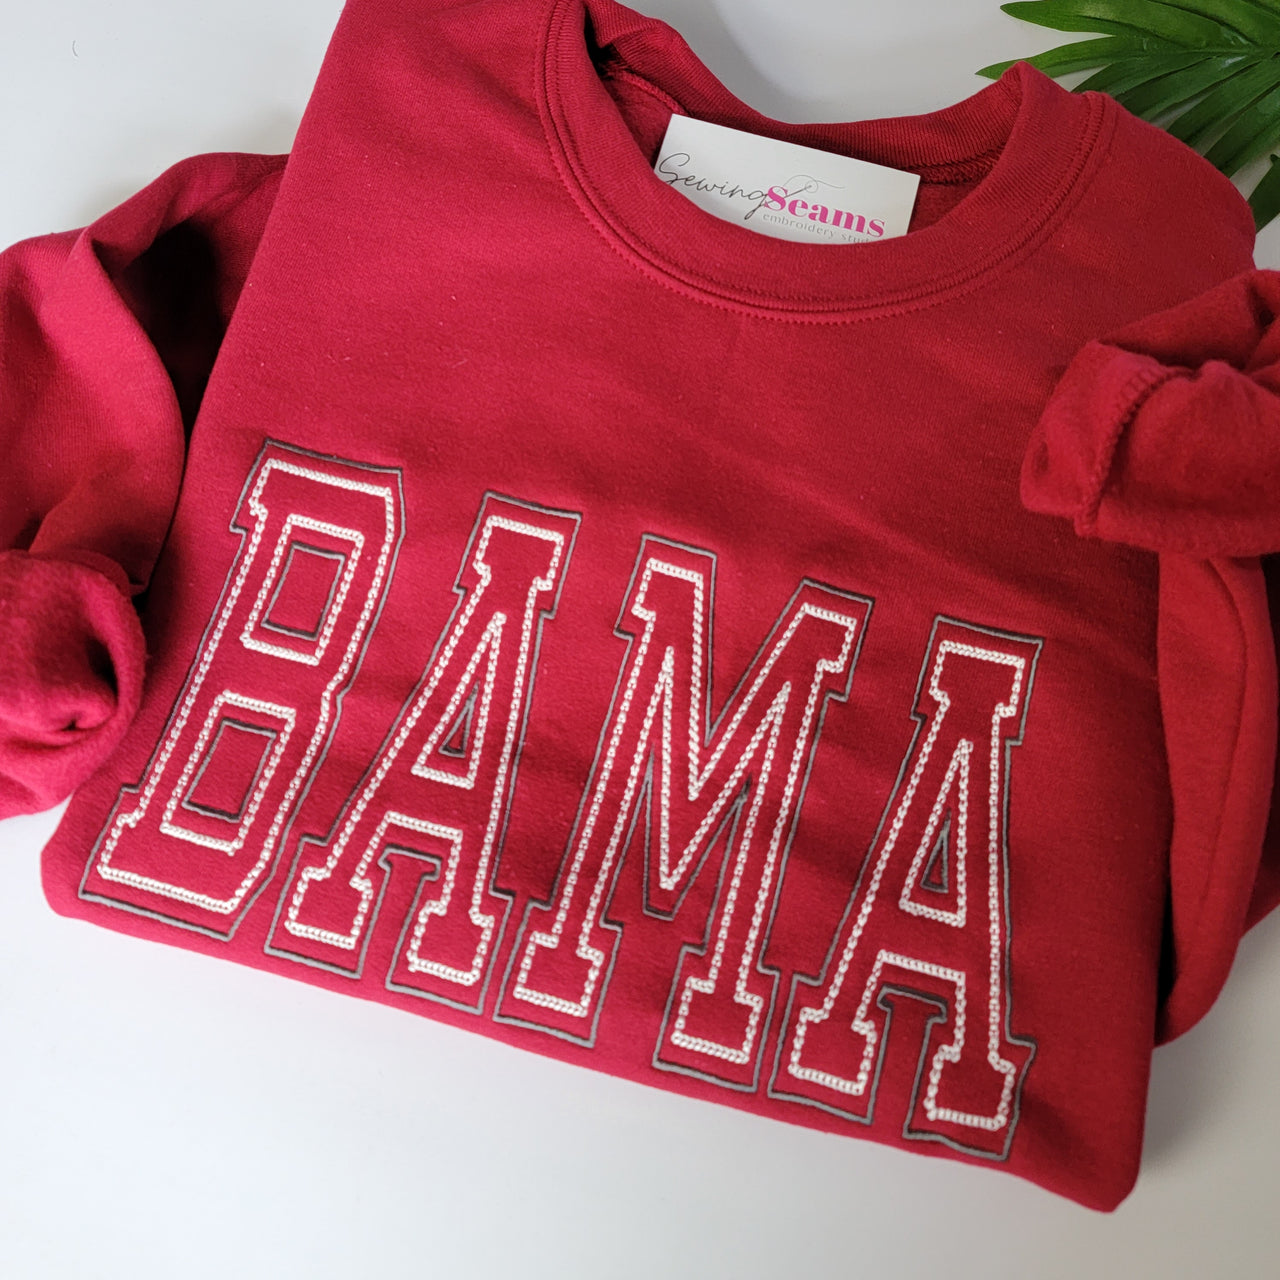 BAMA Sweatshirt